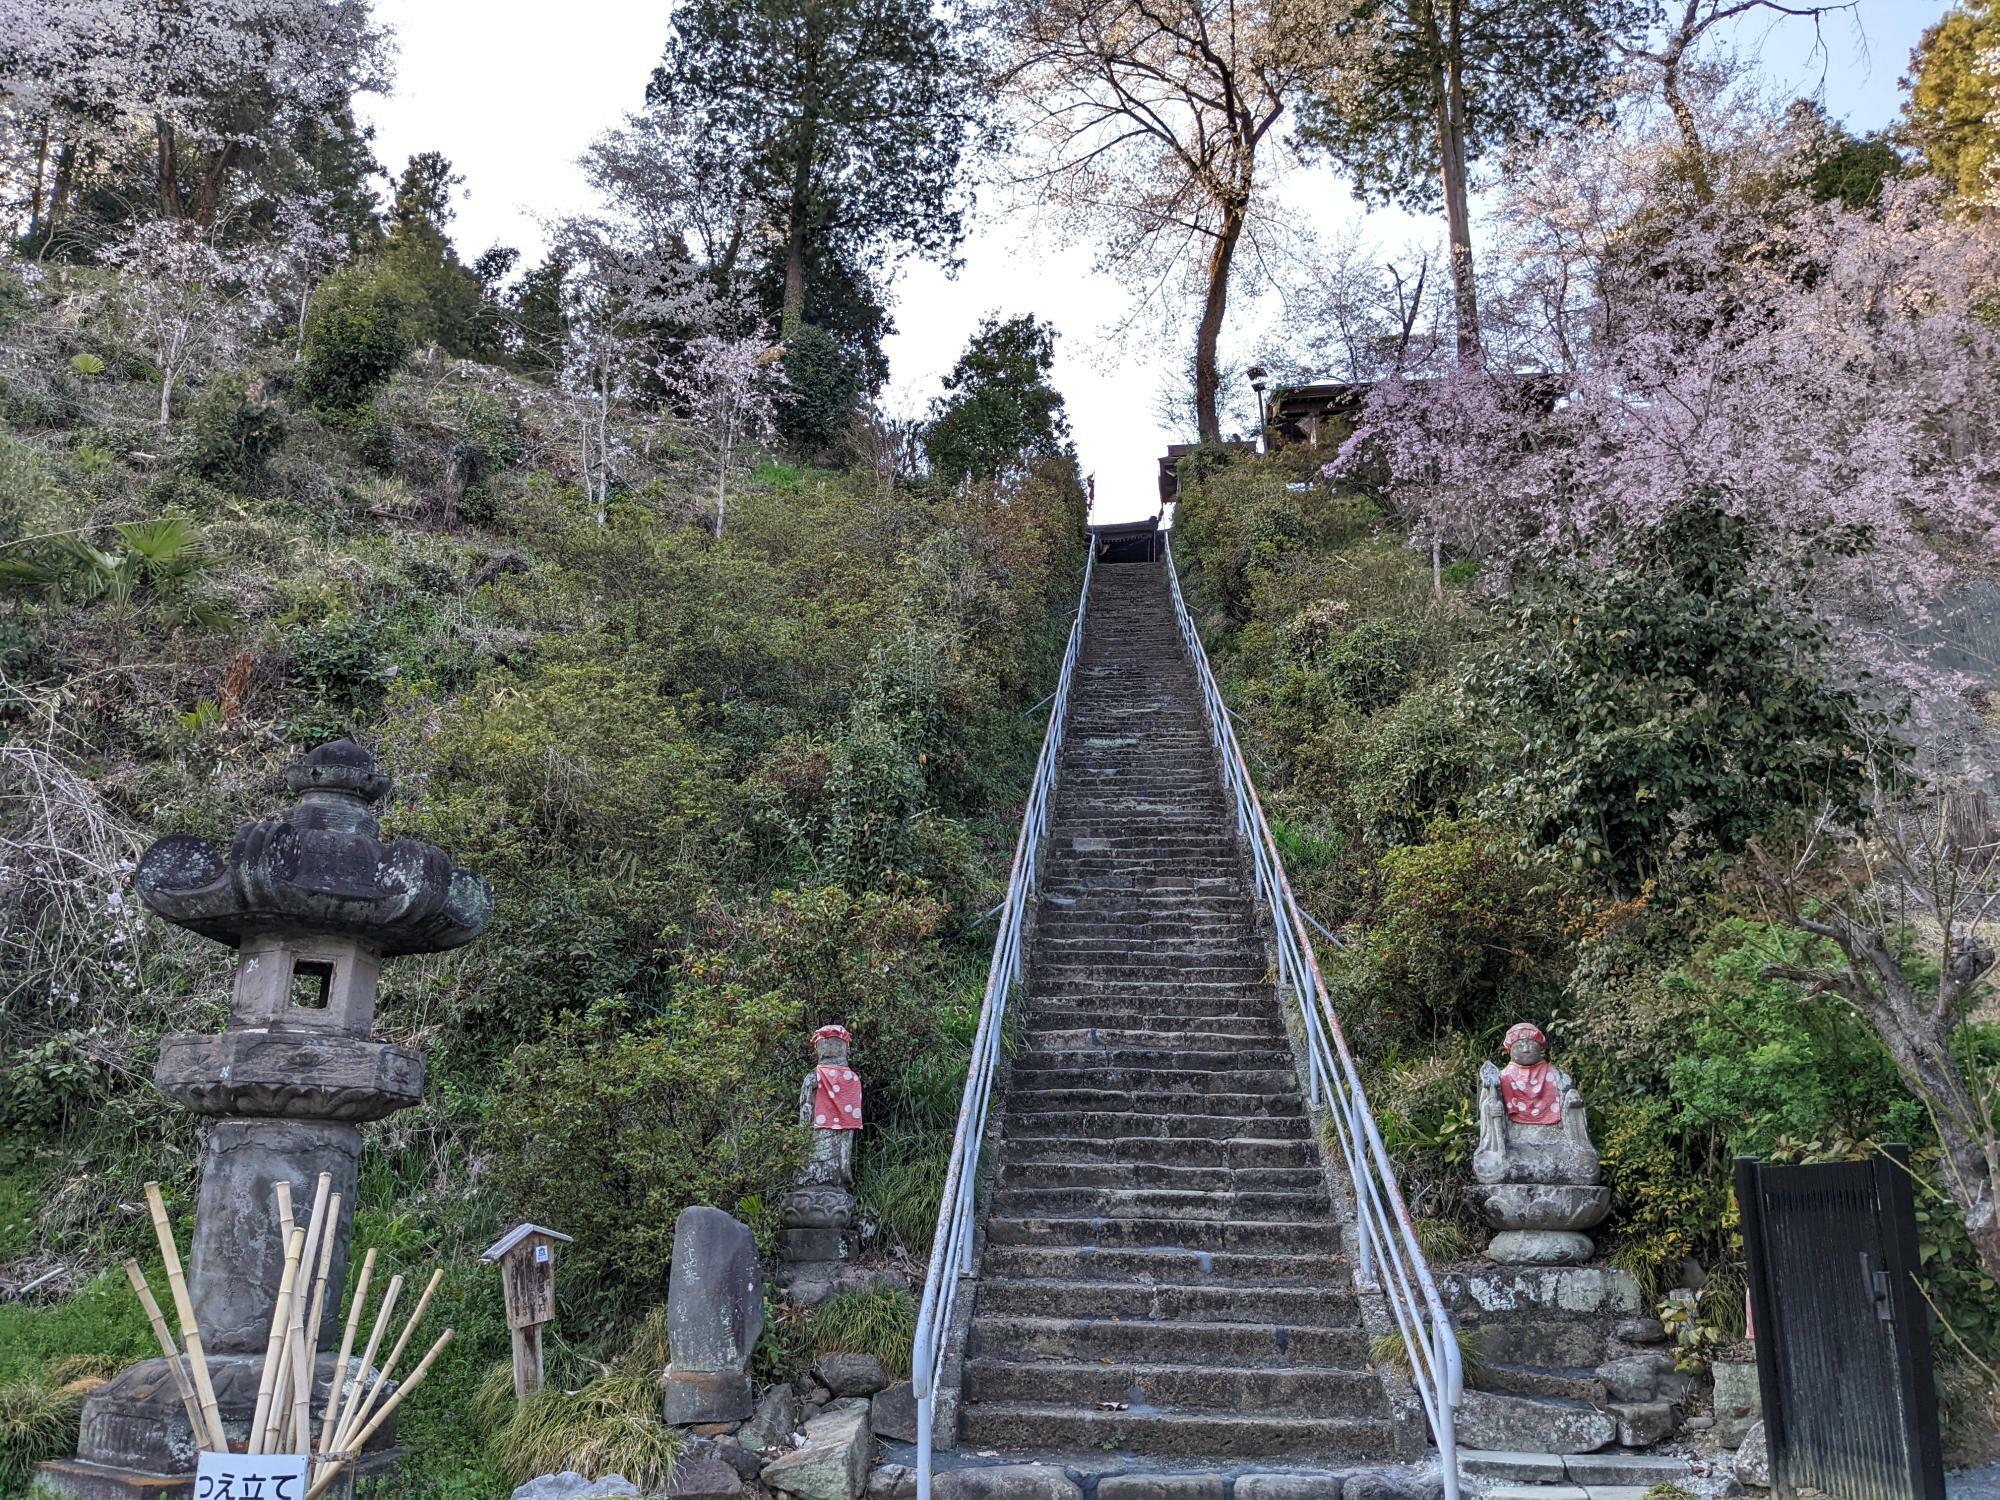 24番法泉寺前の階段は117段